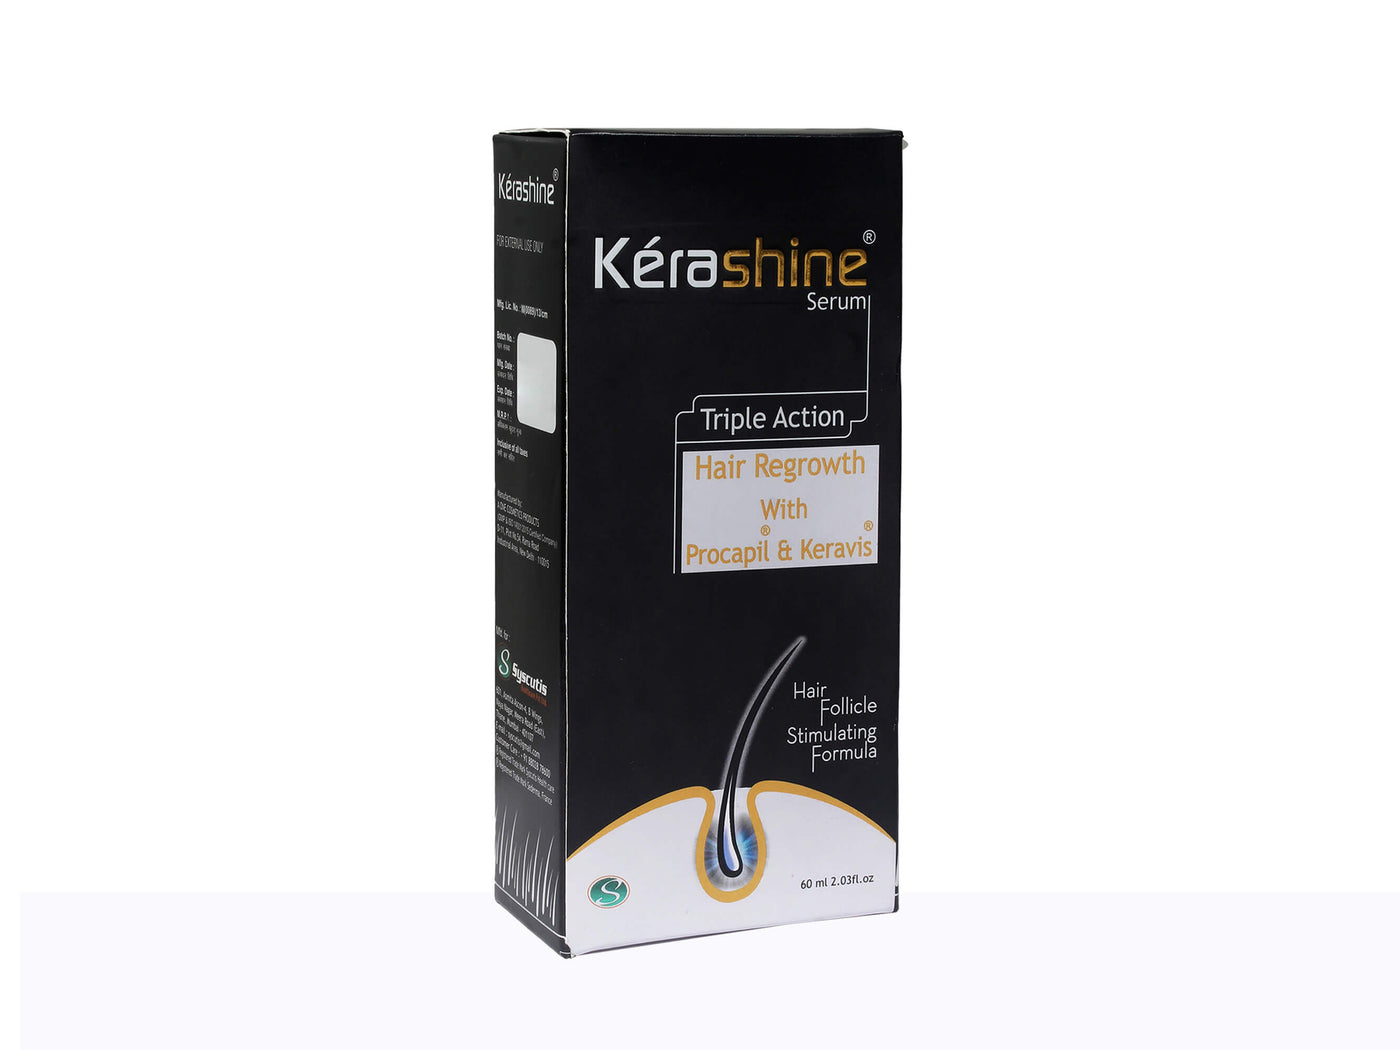 Kerashine Serum - Clinikally